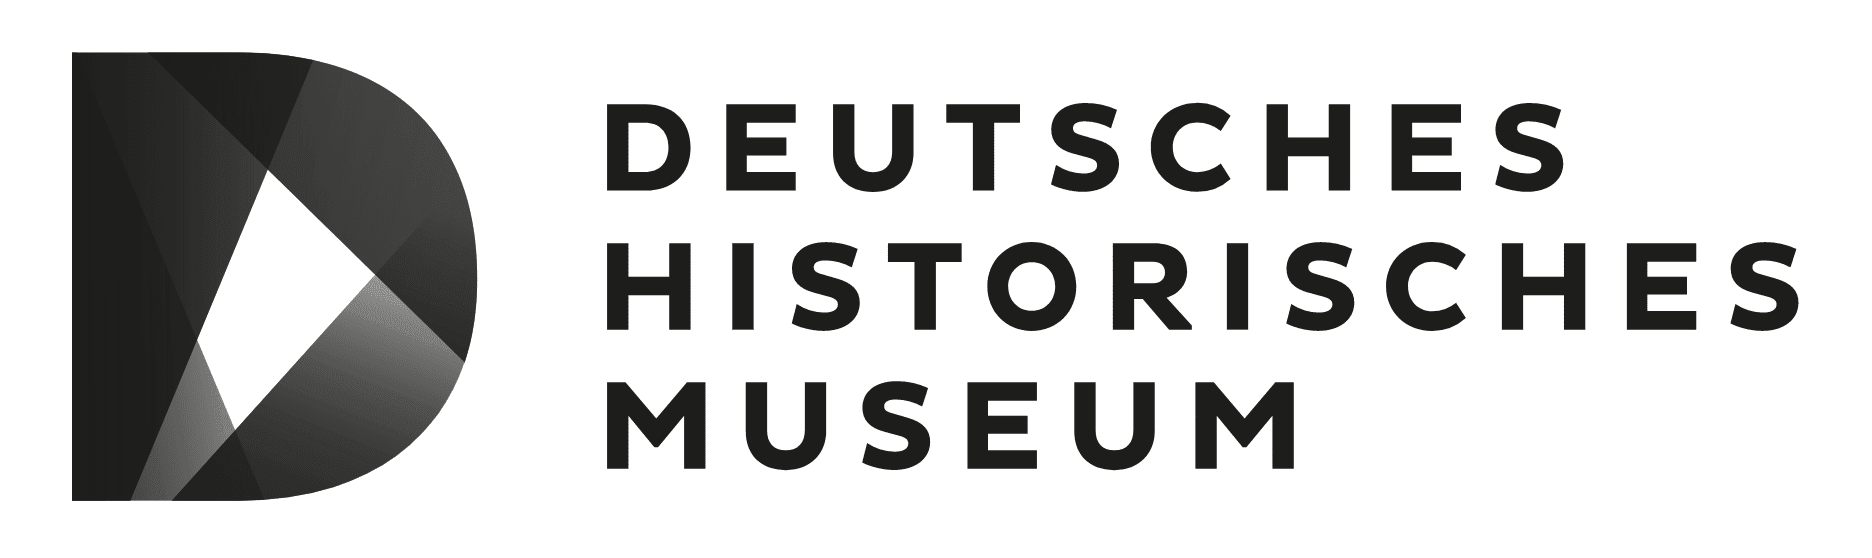 Deutsches Historisches Museum-logo